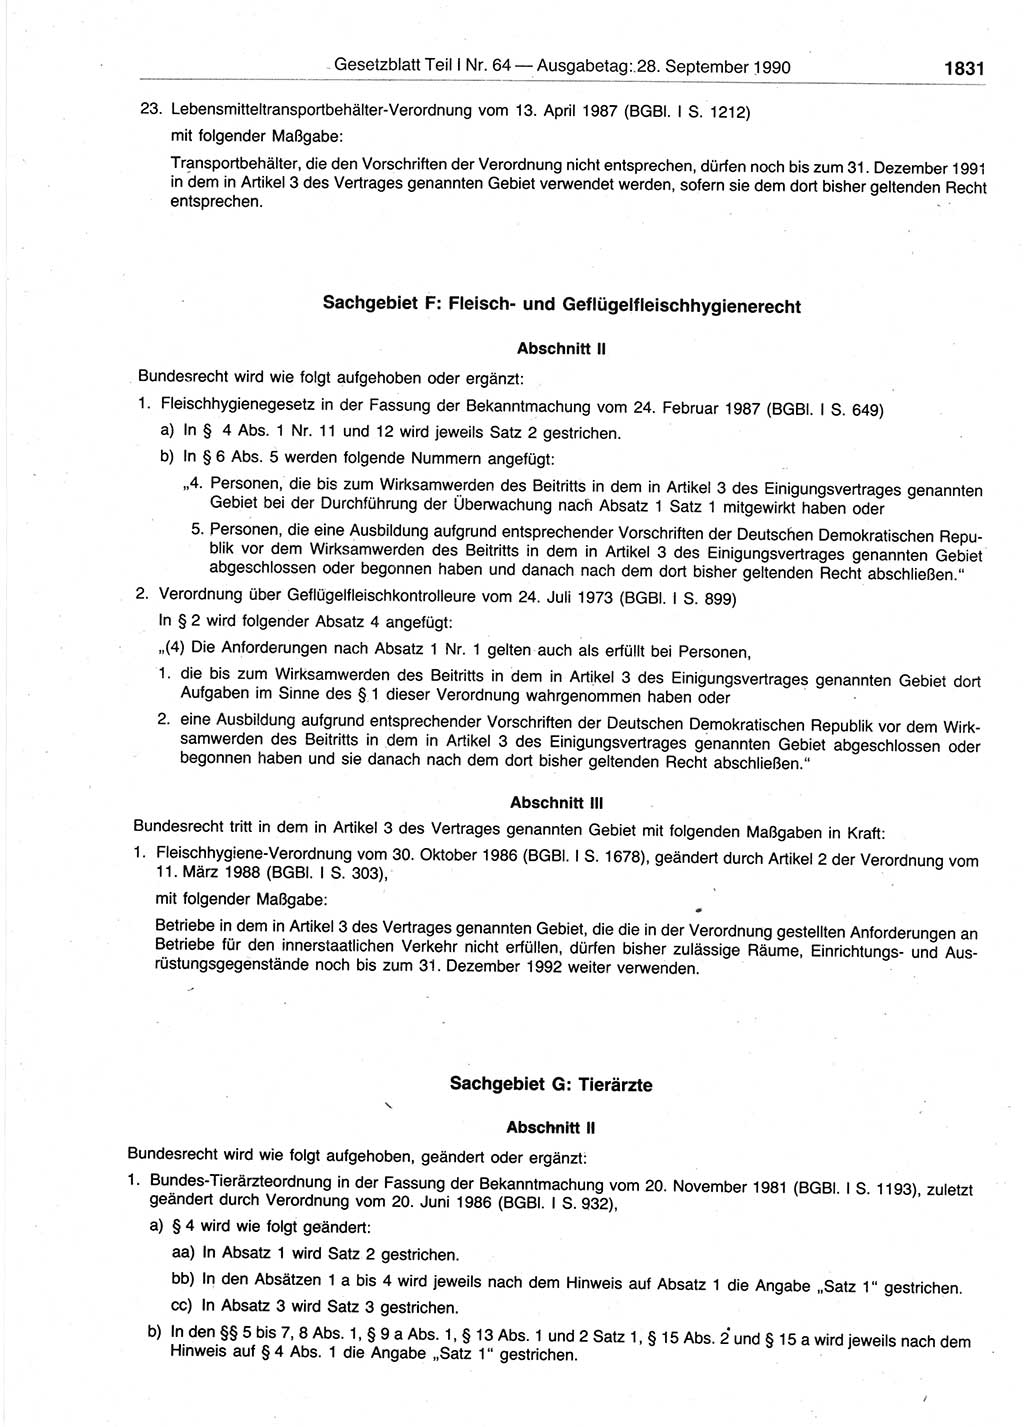 Gesetzblatt (GBl.) der Deutschen Demokratischen Republik (DDR) Teil Ⅰ 1990, Seite 1831 (GBl. DDR Ⅰ 1990, S. 1831)